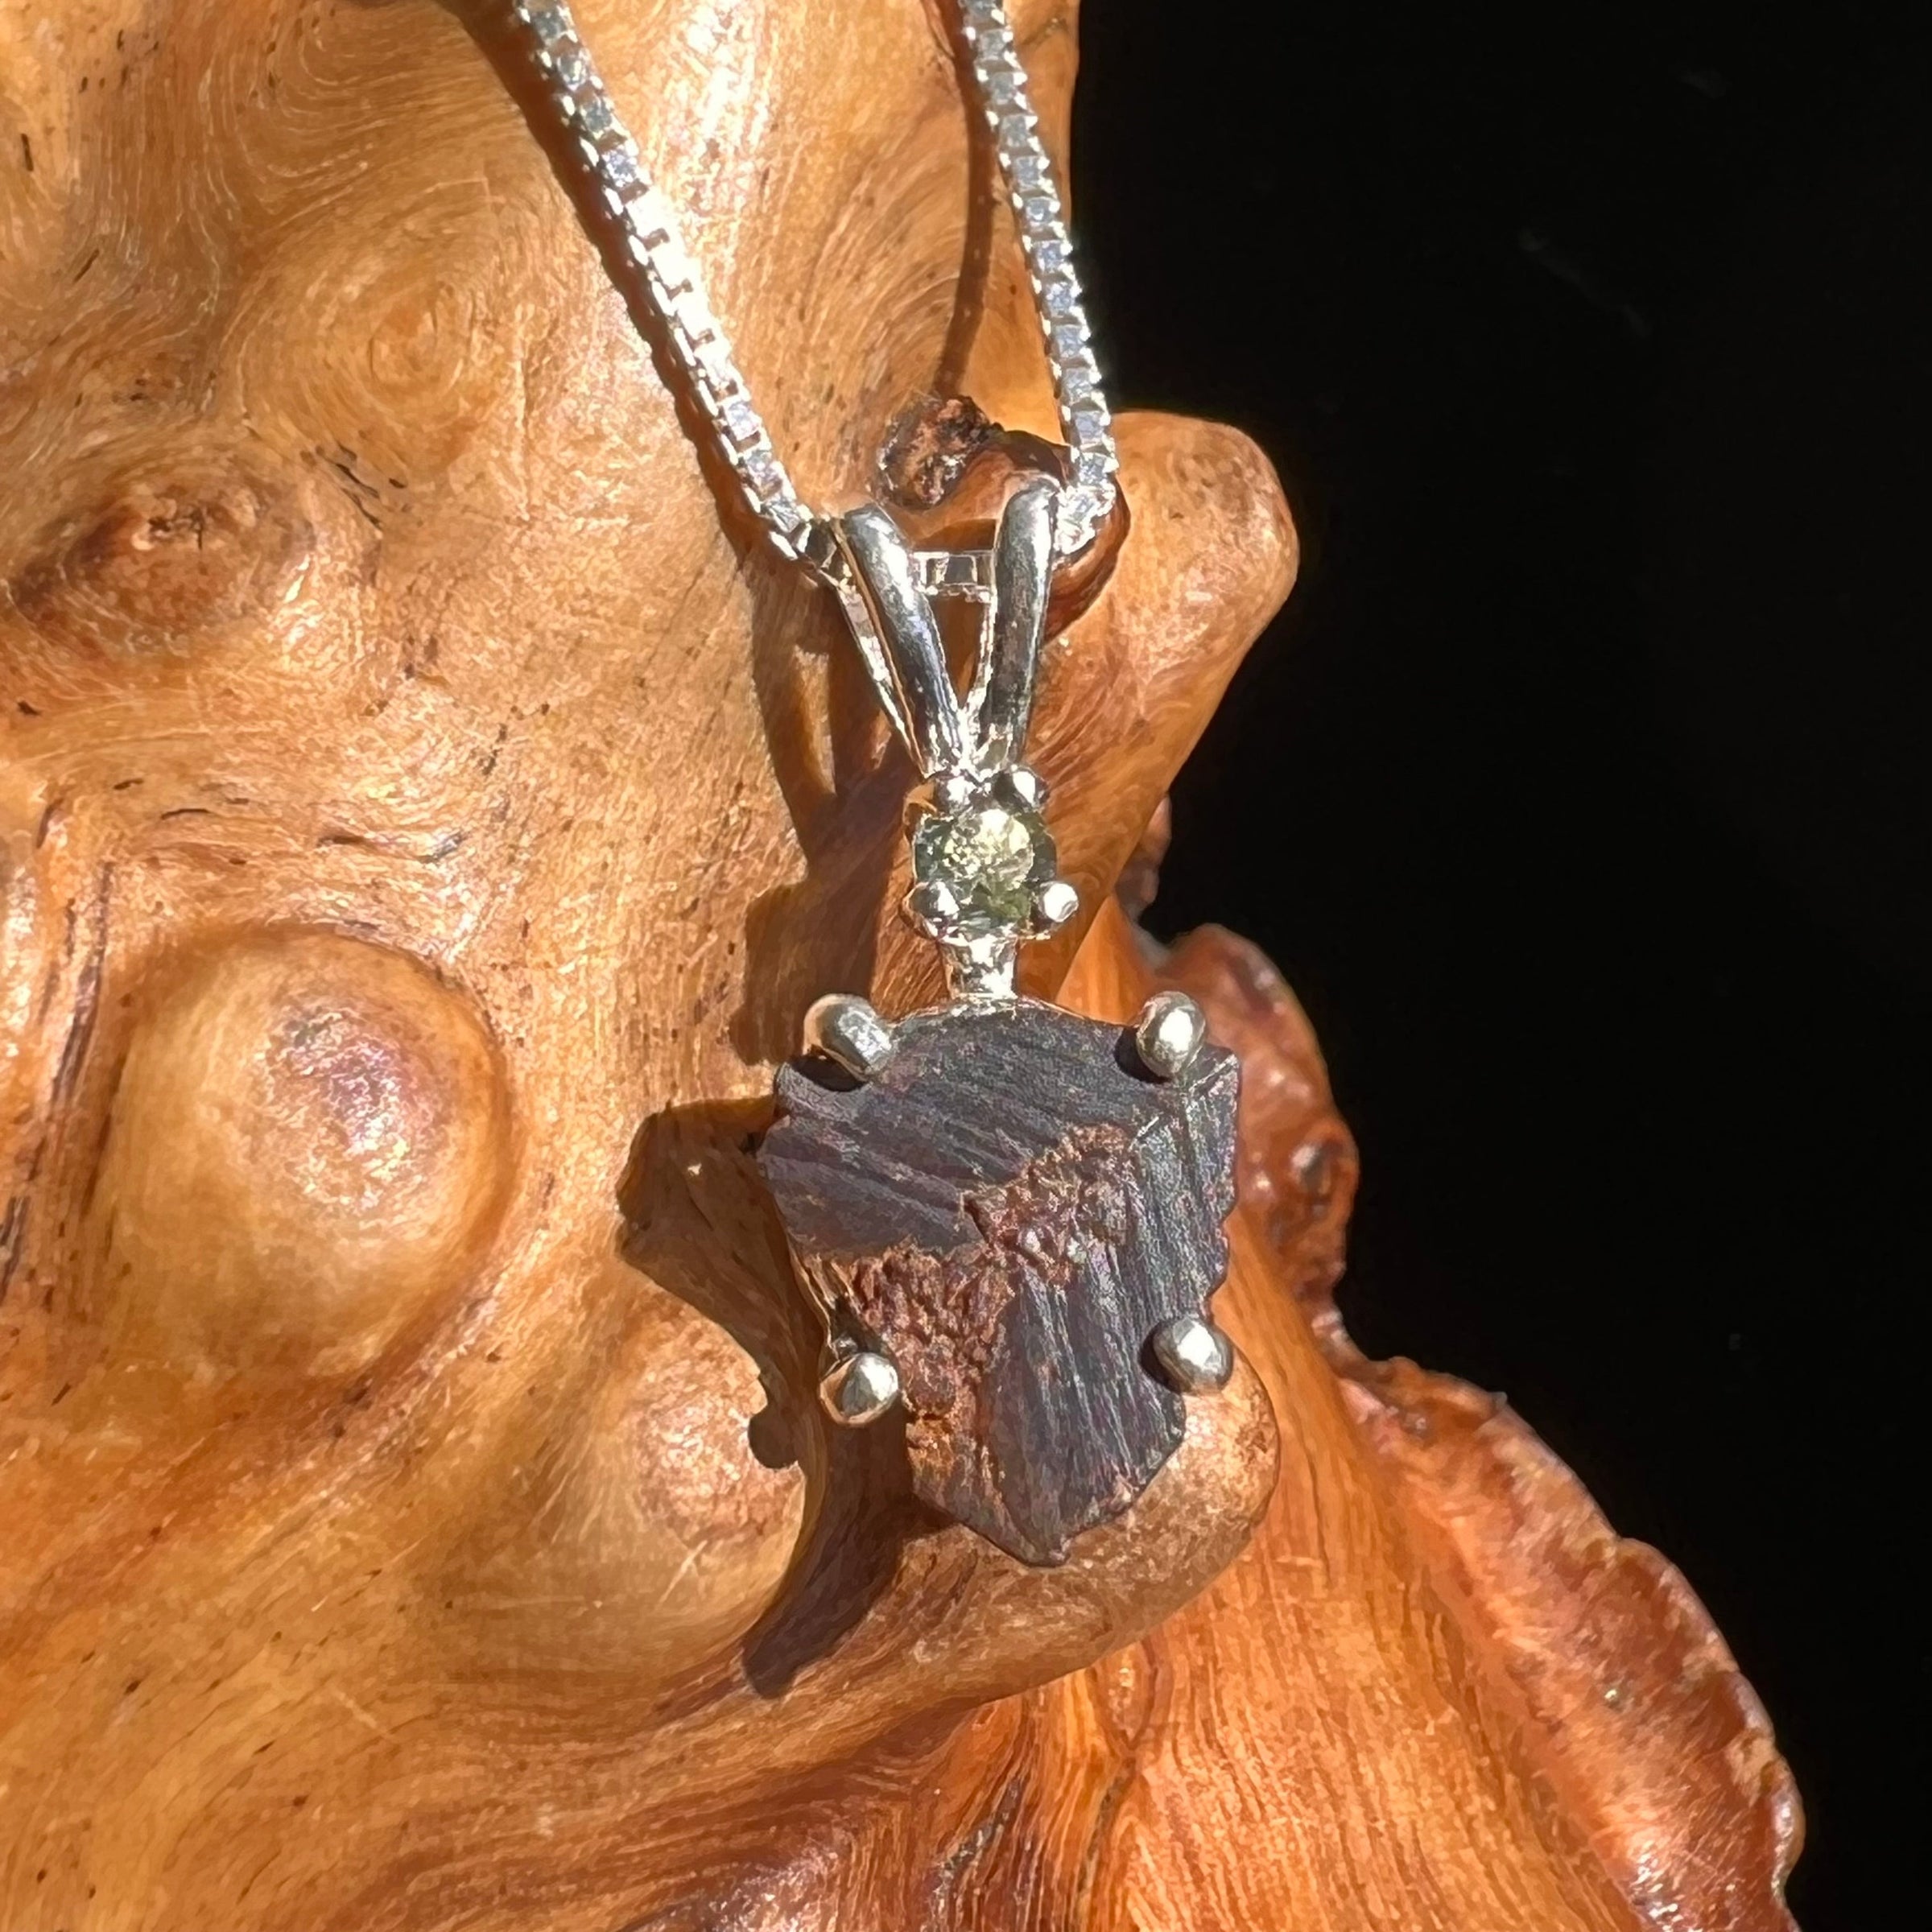 Prophecy Stone & Moldavite Necklace Silver #2645-Moldavite Life